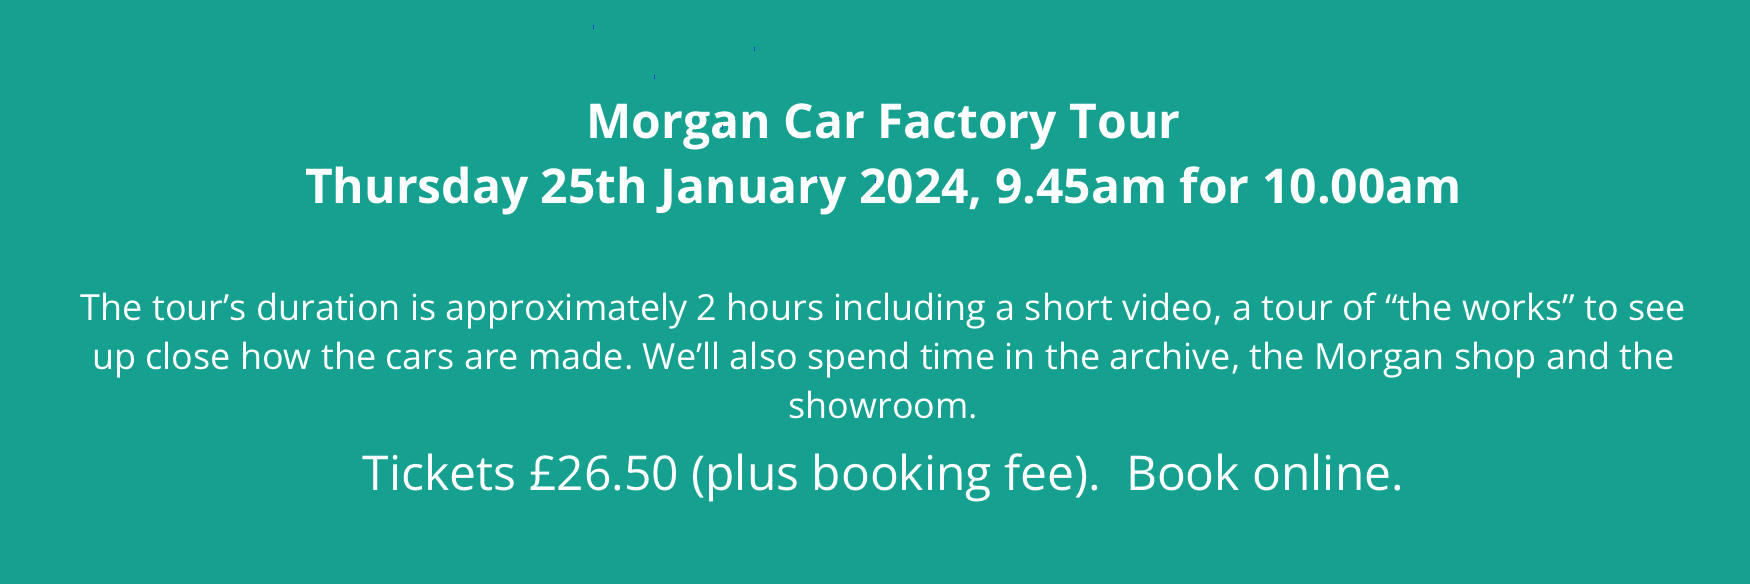 Morgan Car Factory Tour 25th January 2024